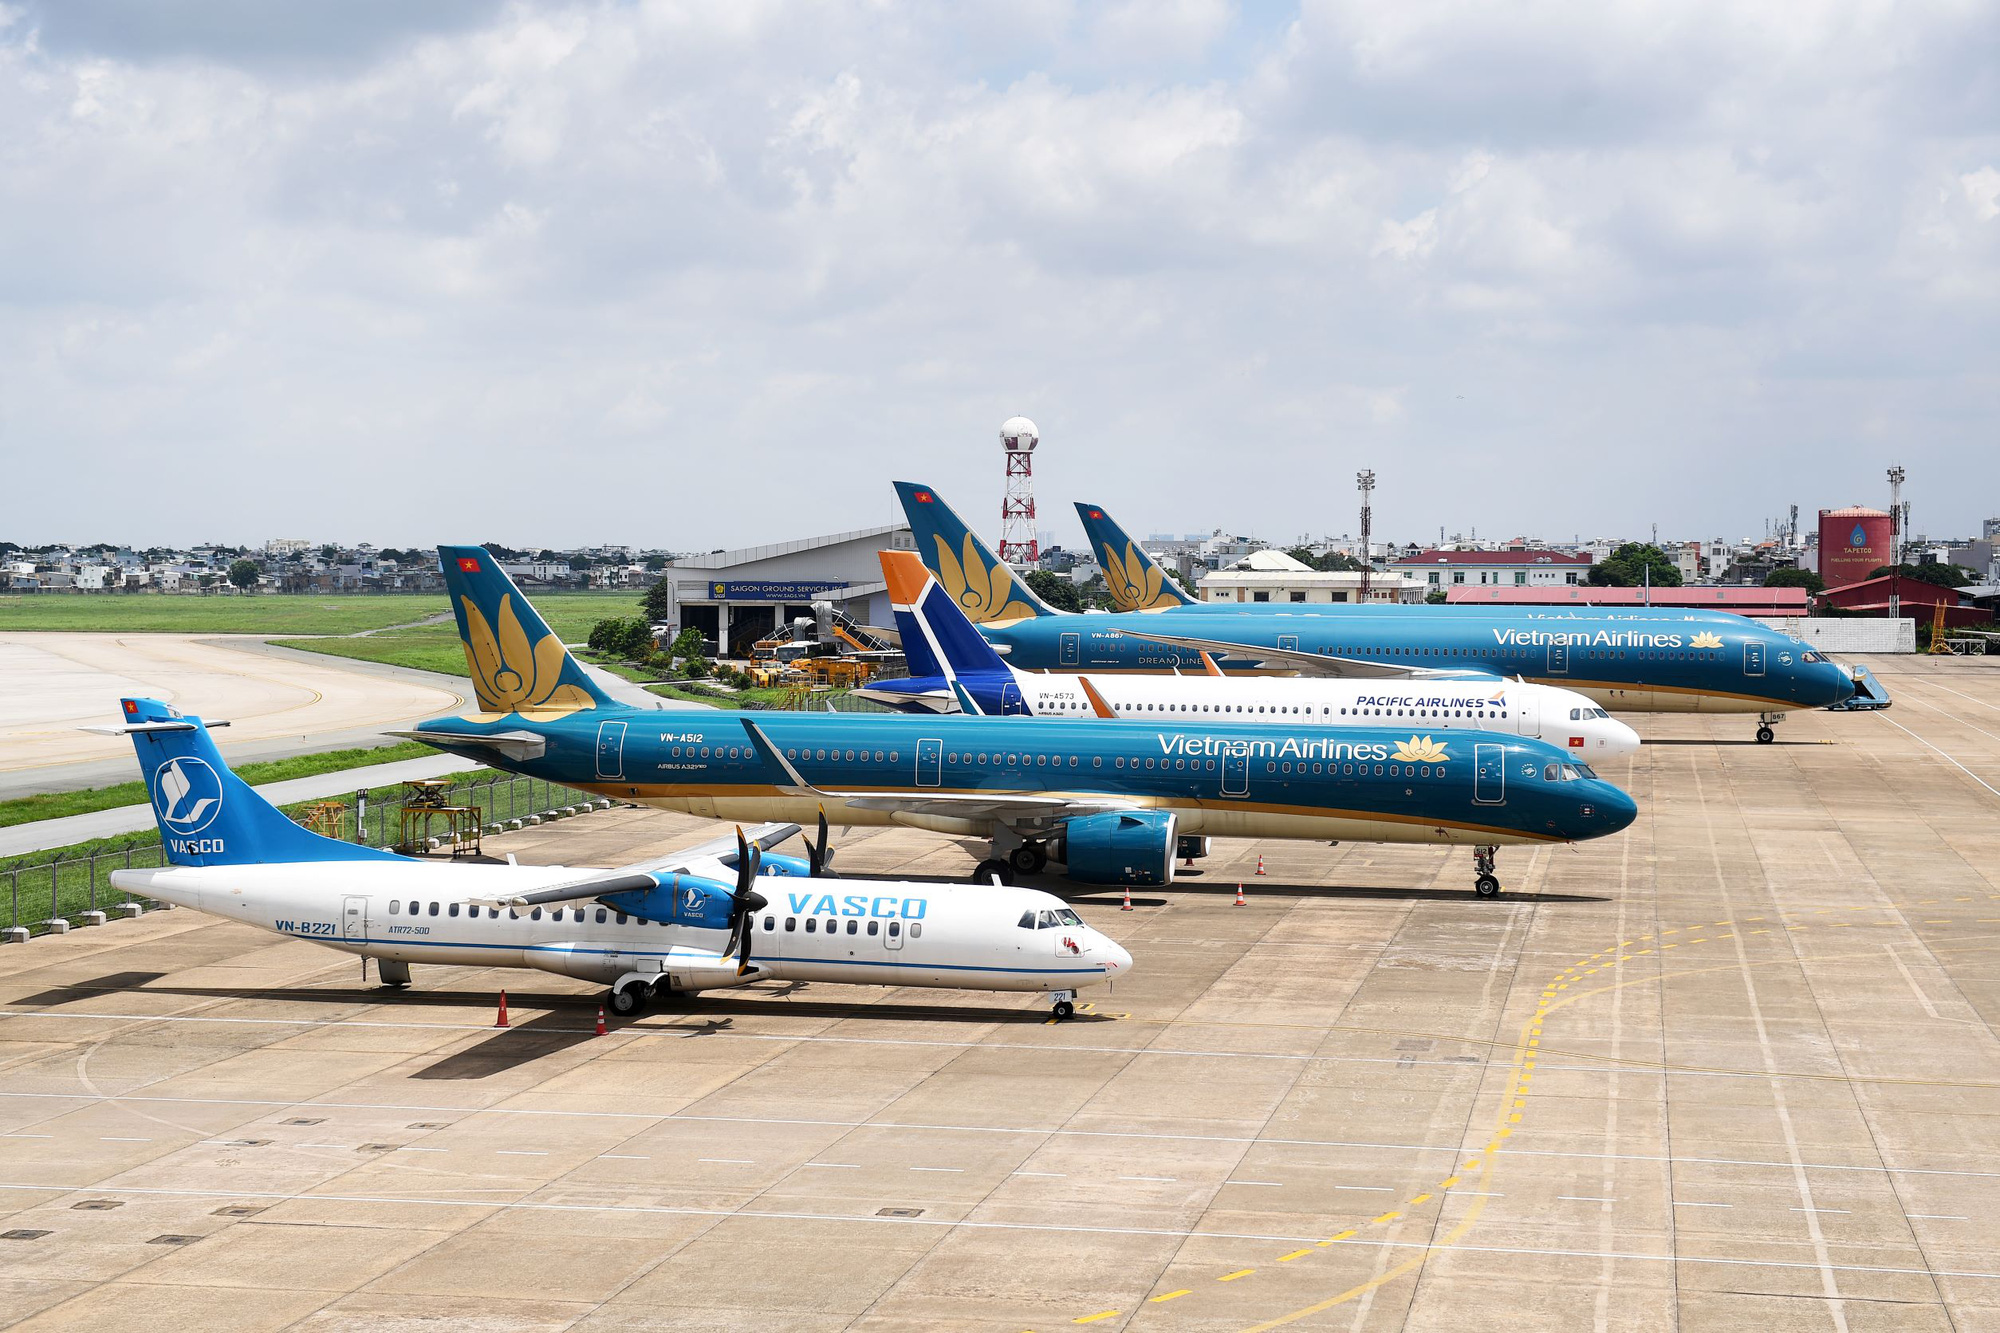 Vì sao giá nhiên liệu tăng cao, Vietnam Airlines bất ngờ giảm lỗ? - Ảnh 2.